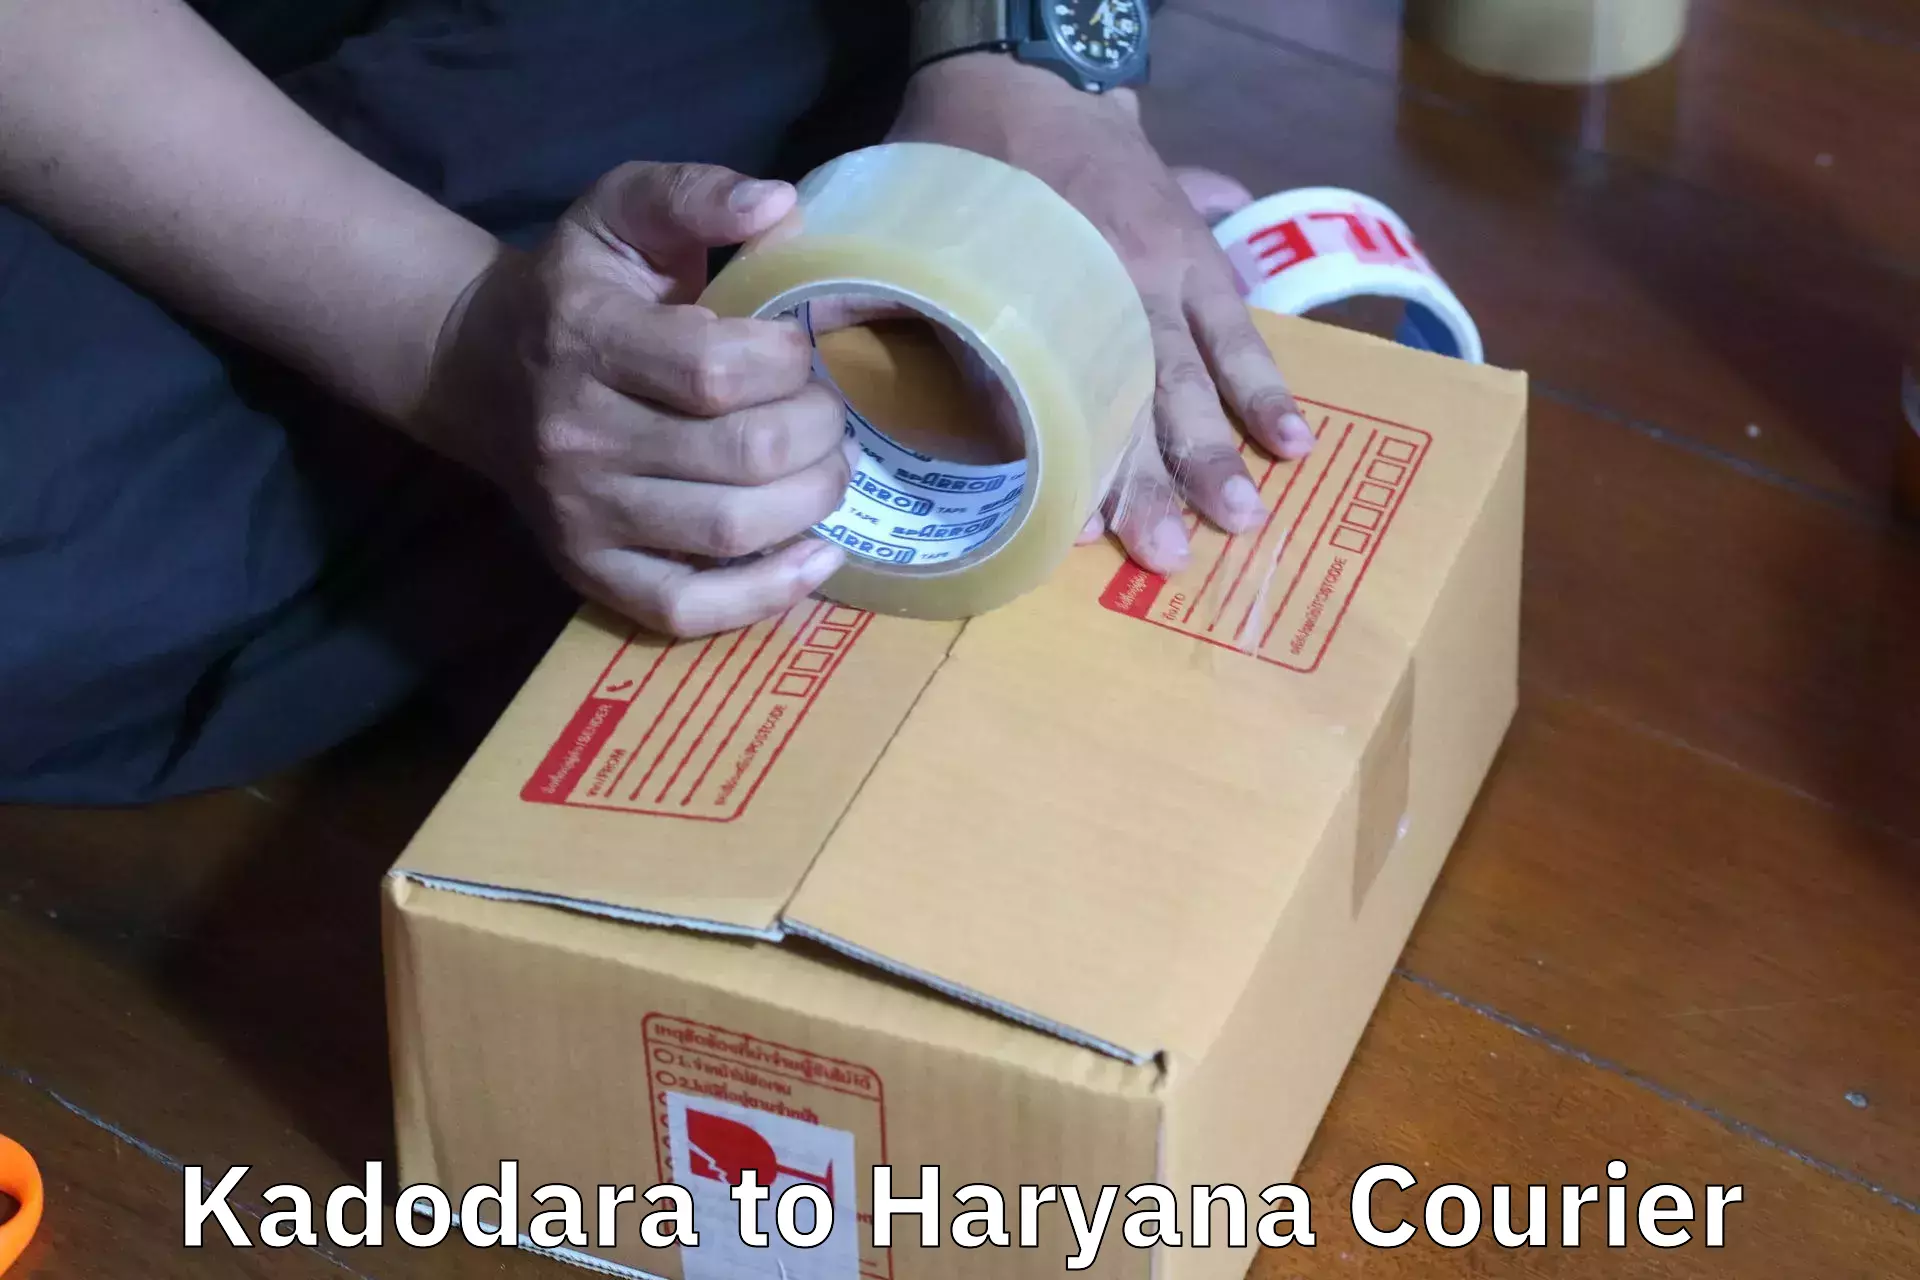 Furniture moving experts Kadodara to Haryana